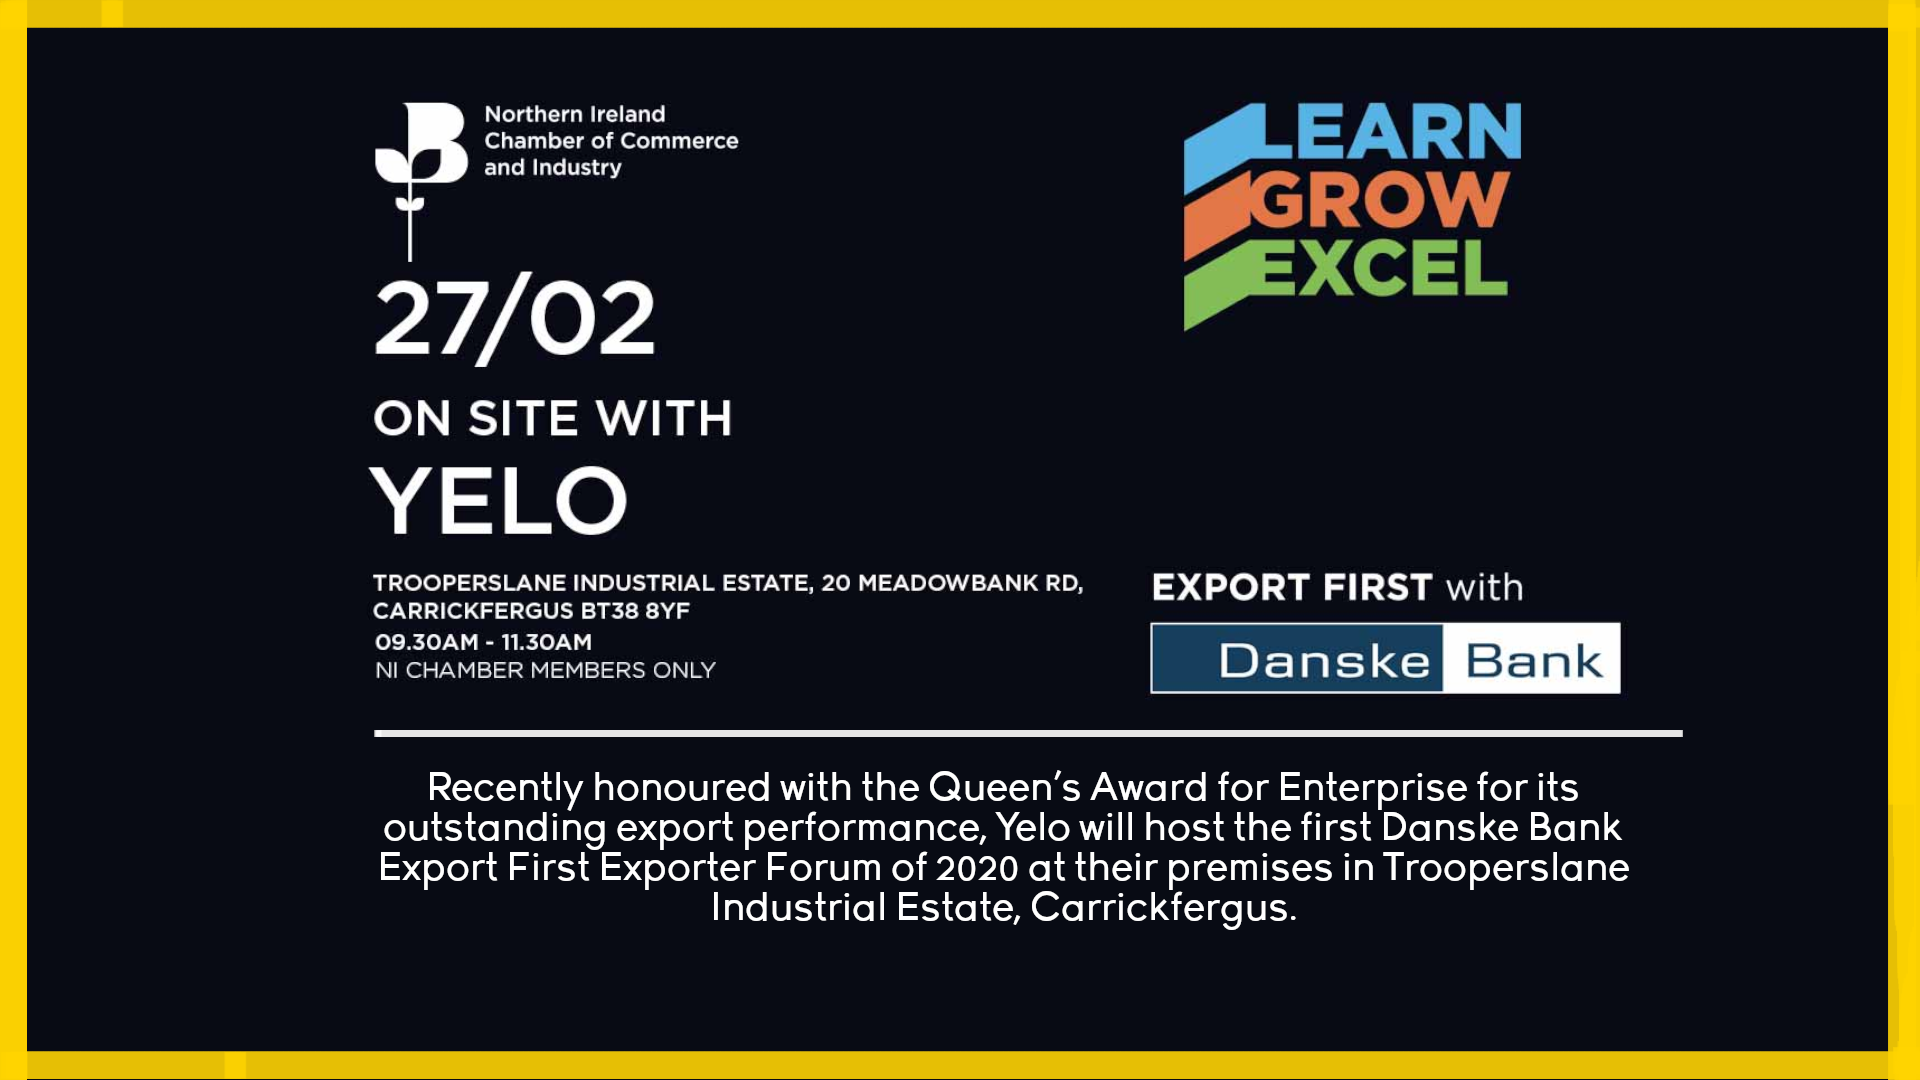 Yelo to Host Danske Bank Export First Exporter Forum